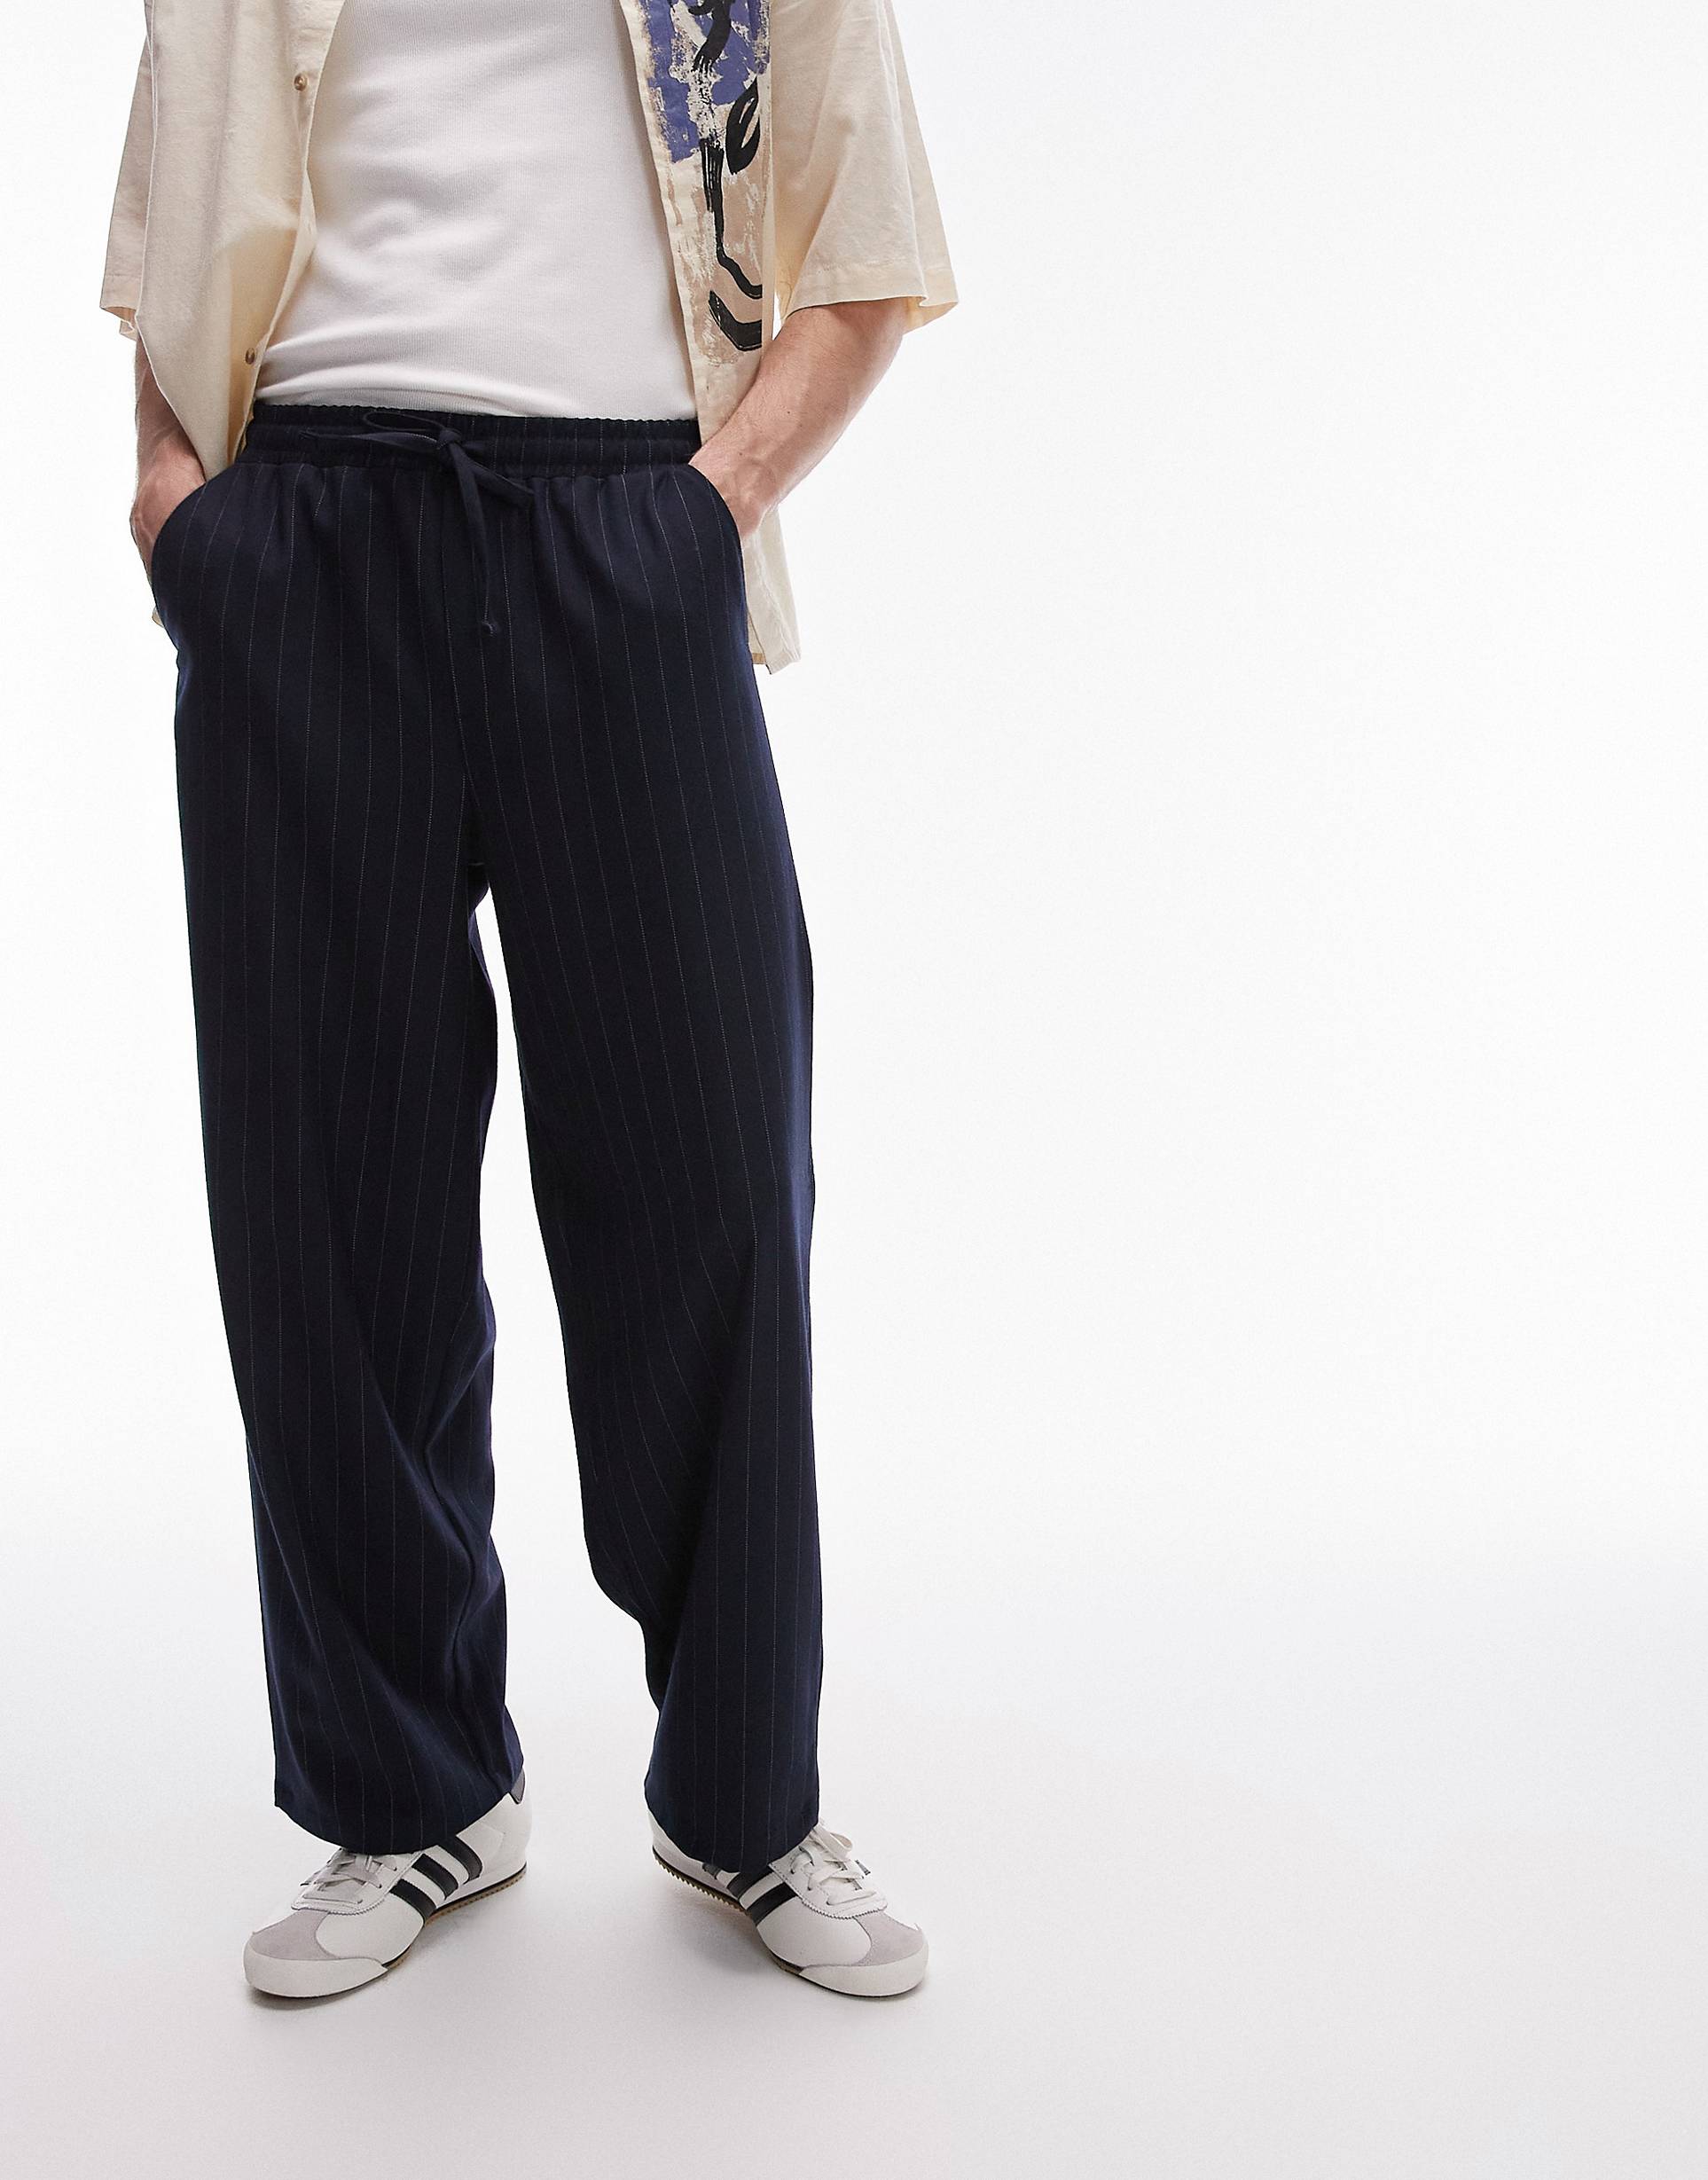 Брюки Topman Wide Leg Pin Stripe, темно-синий брюки jennyfer в полоску 44 размер